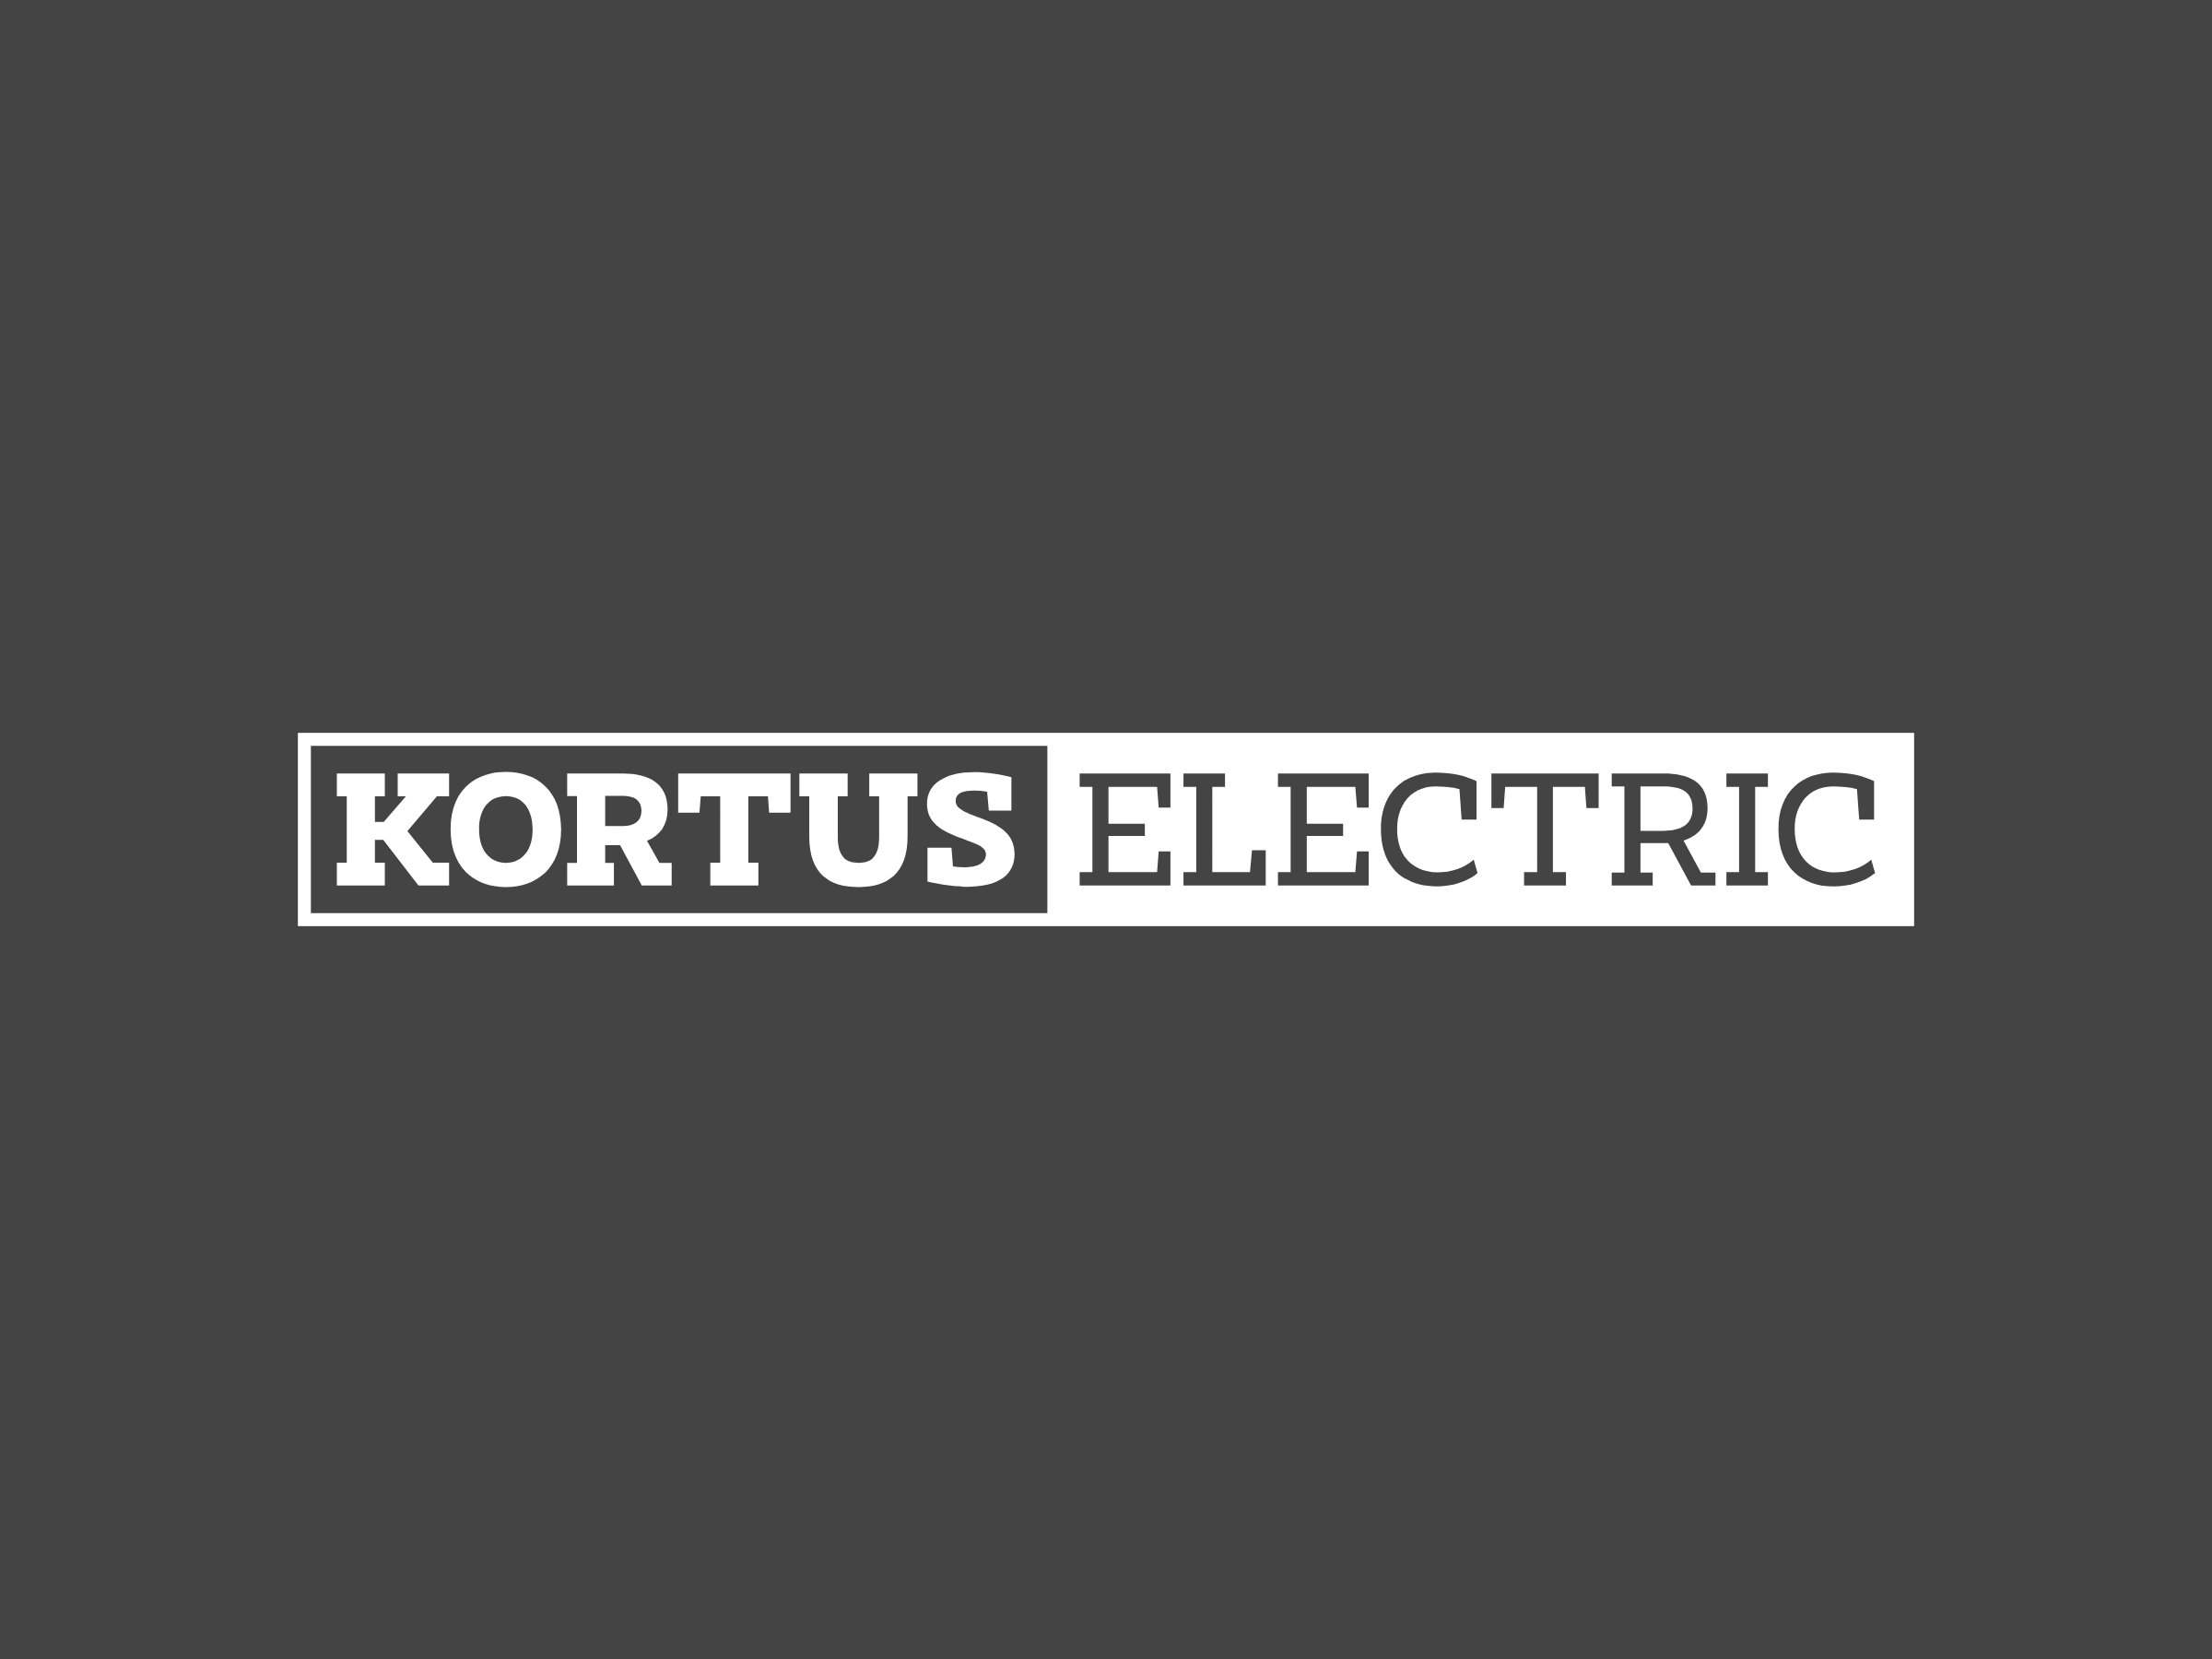 Kortus Electric White logo 2400x1800.jpg